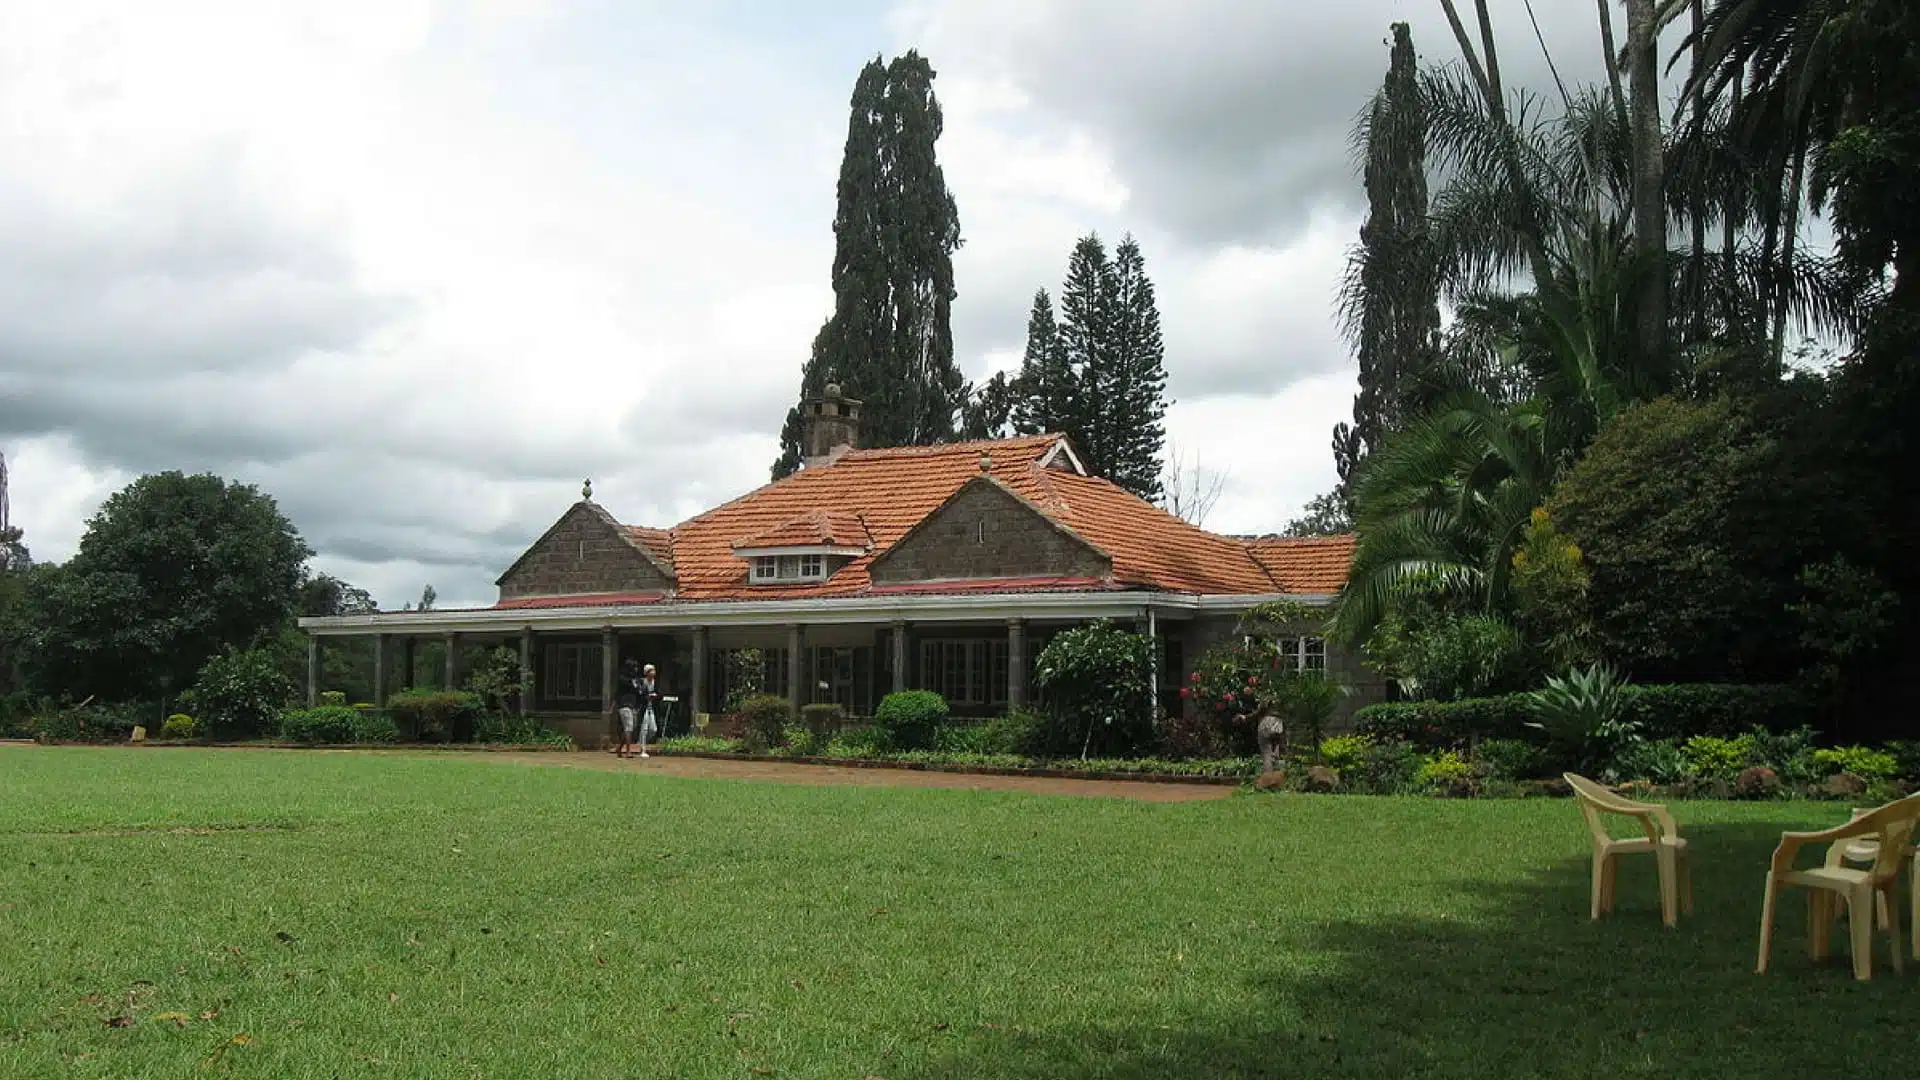 Karen Blixen house in Kenya